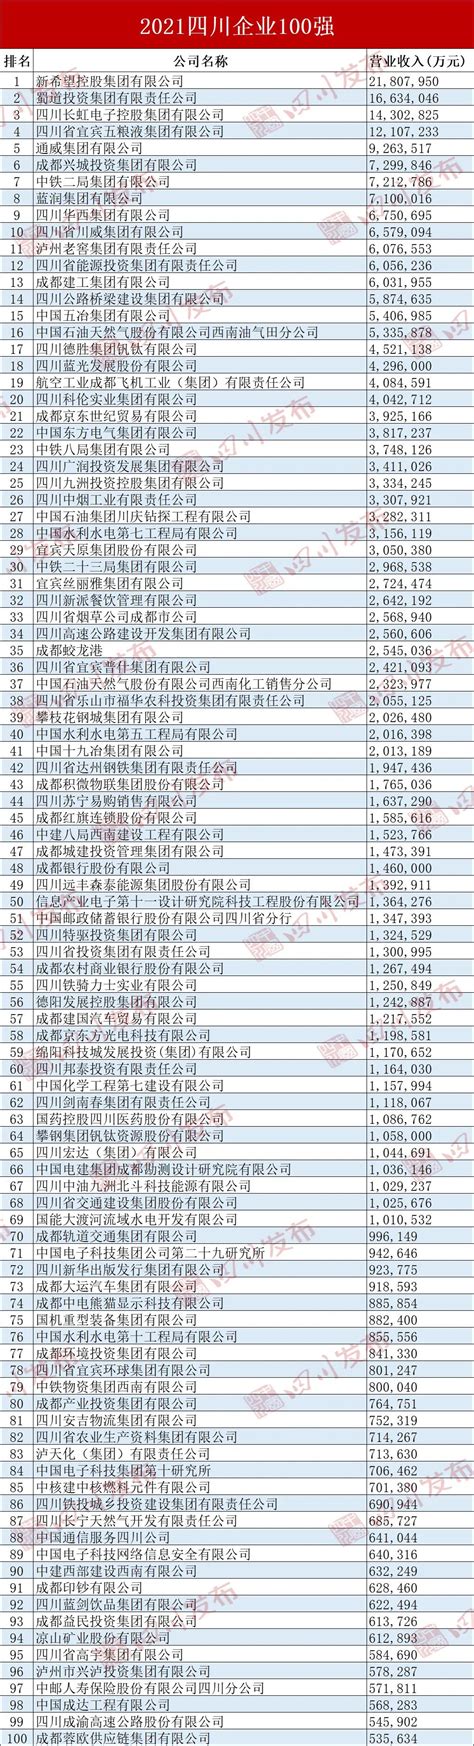 2021四川100强企业名单发布 新希望集团居首-项目城网